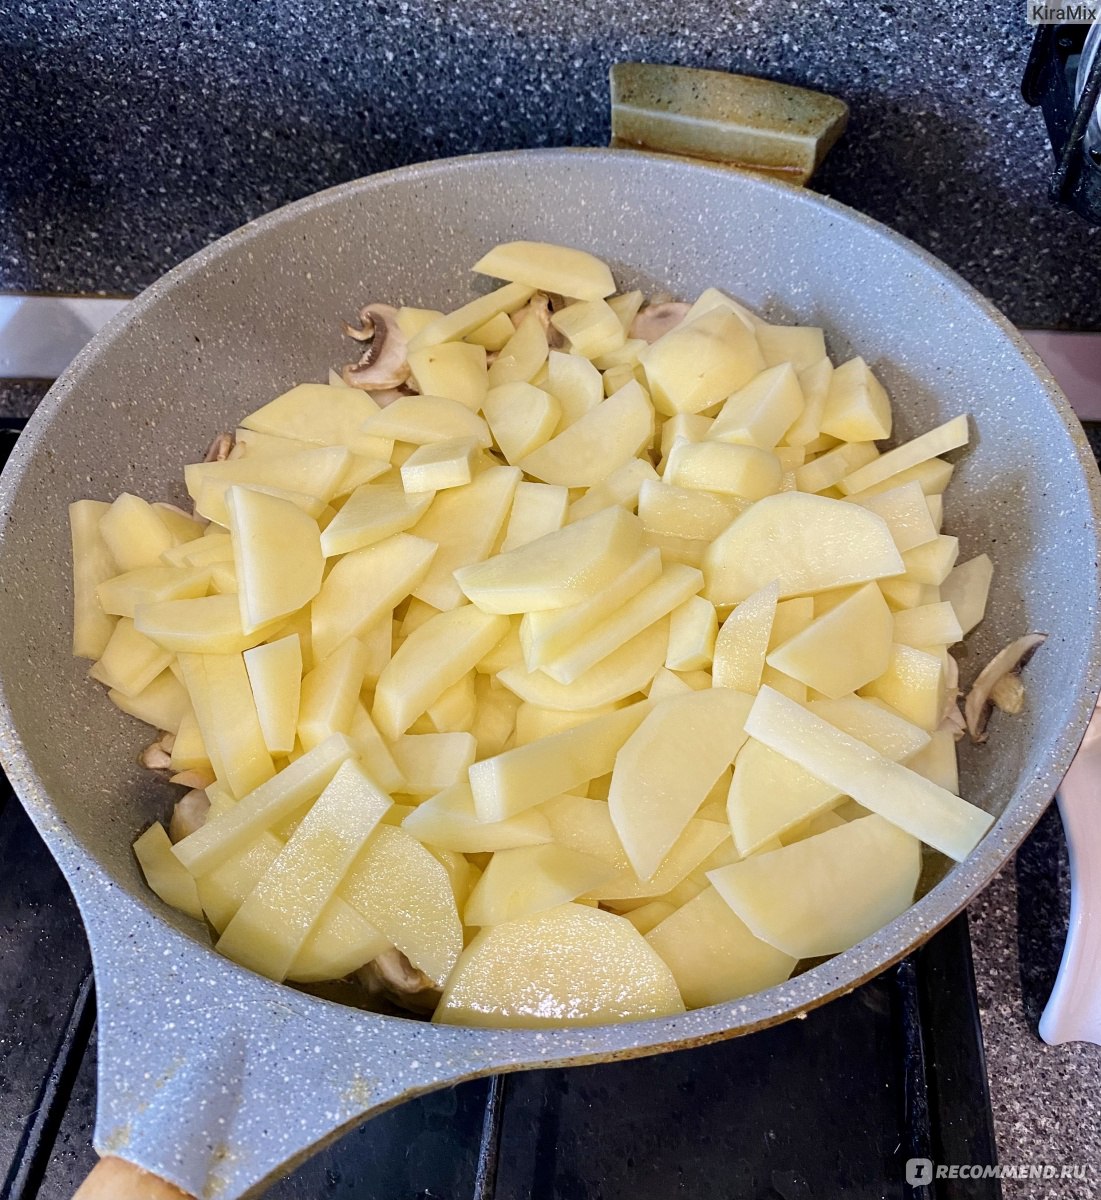 Жареная картошка с луком